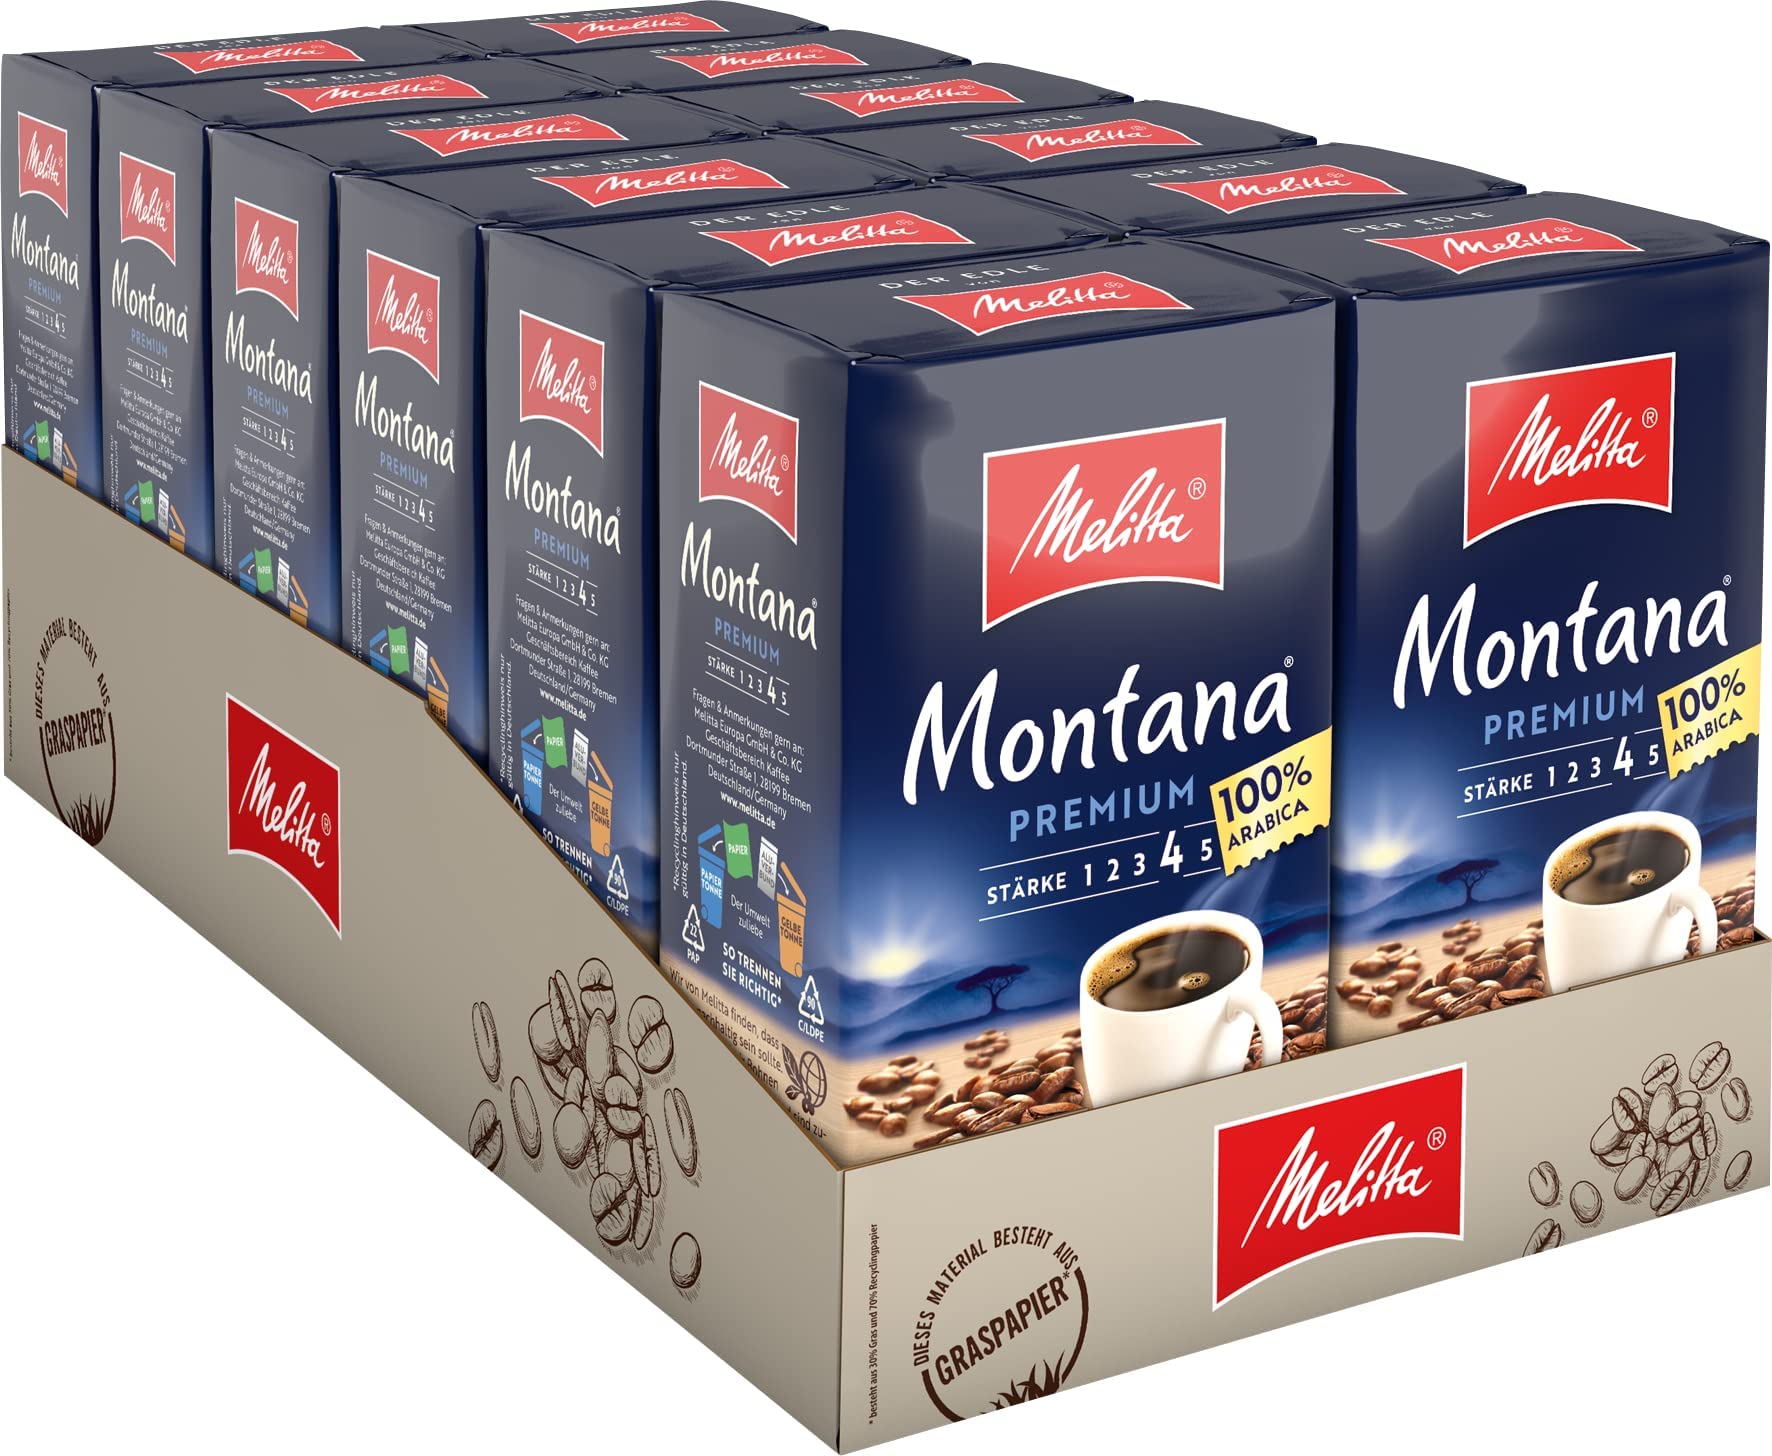 Melitta Montana Premium Filter-Kaffee 12 x 500g, gemahlen, Pulver für Filterkaffeemaschinen, 100% Arabica, starke Röstung, geröstet in Deutschland, im Tray